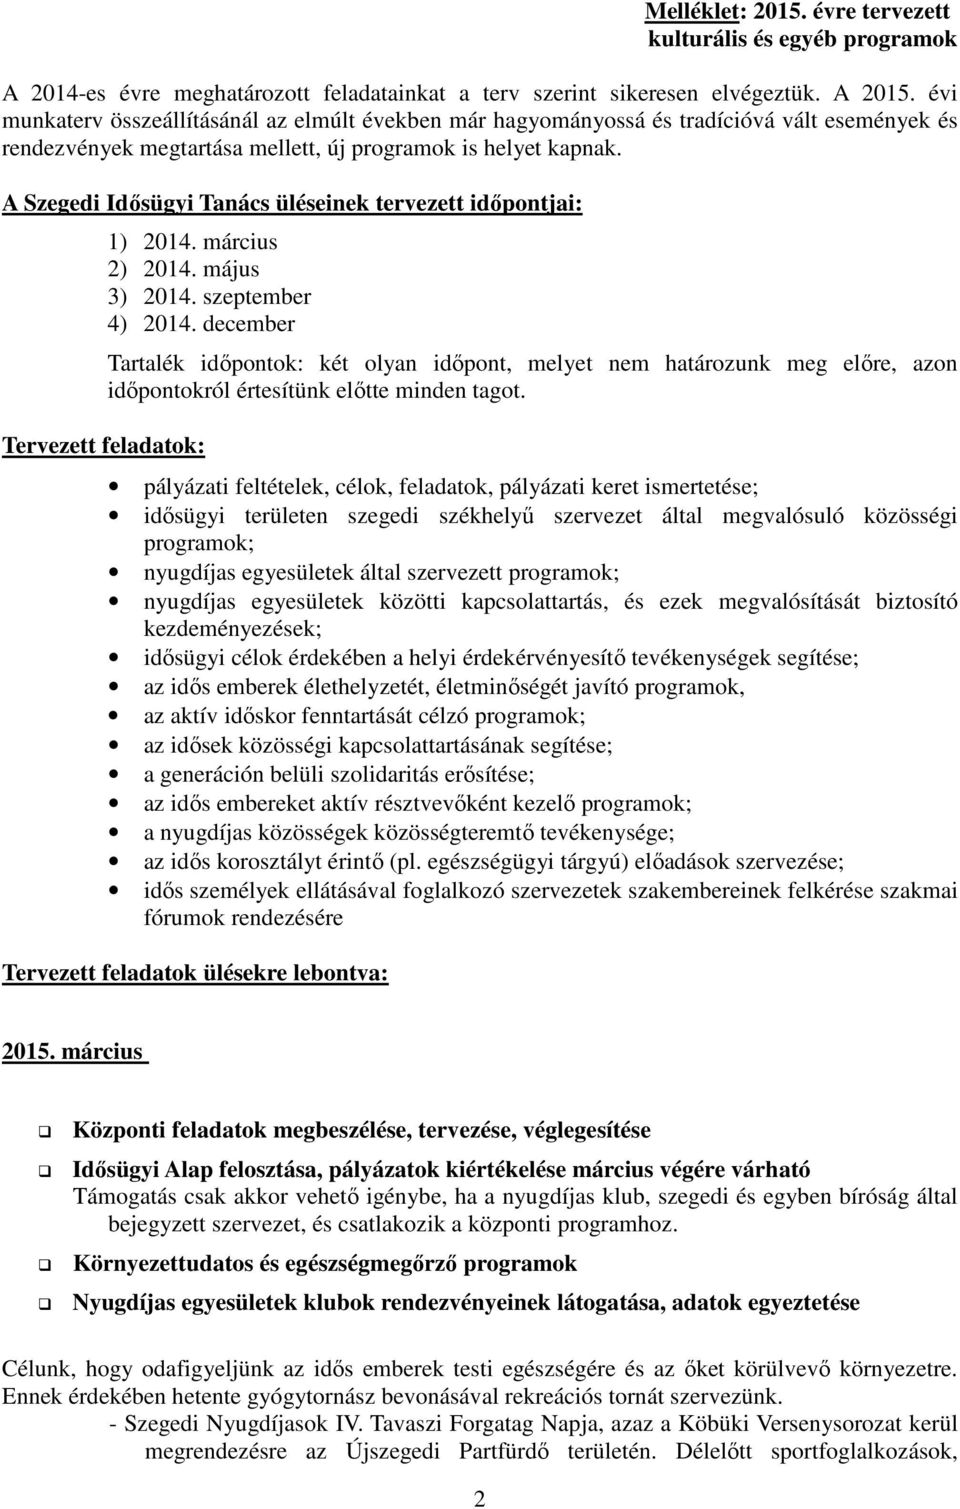 A Szegedi üléseinek tervezett időpontjai: Tervezett feladatok: 1) 2014. március 2) 2014. május 3) 2014. szeptember 4) 2014.